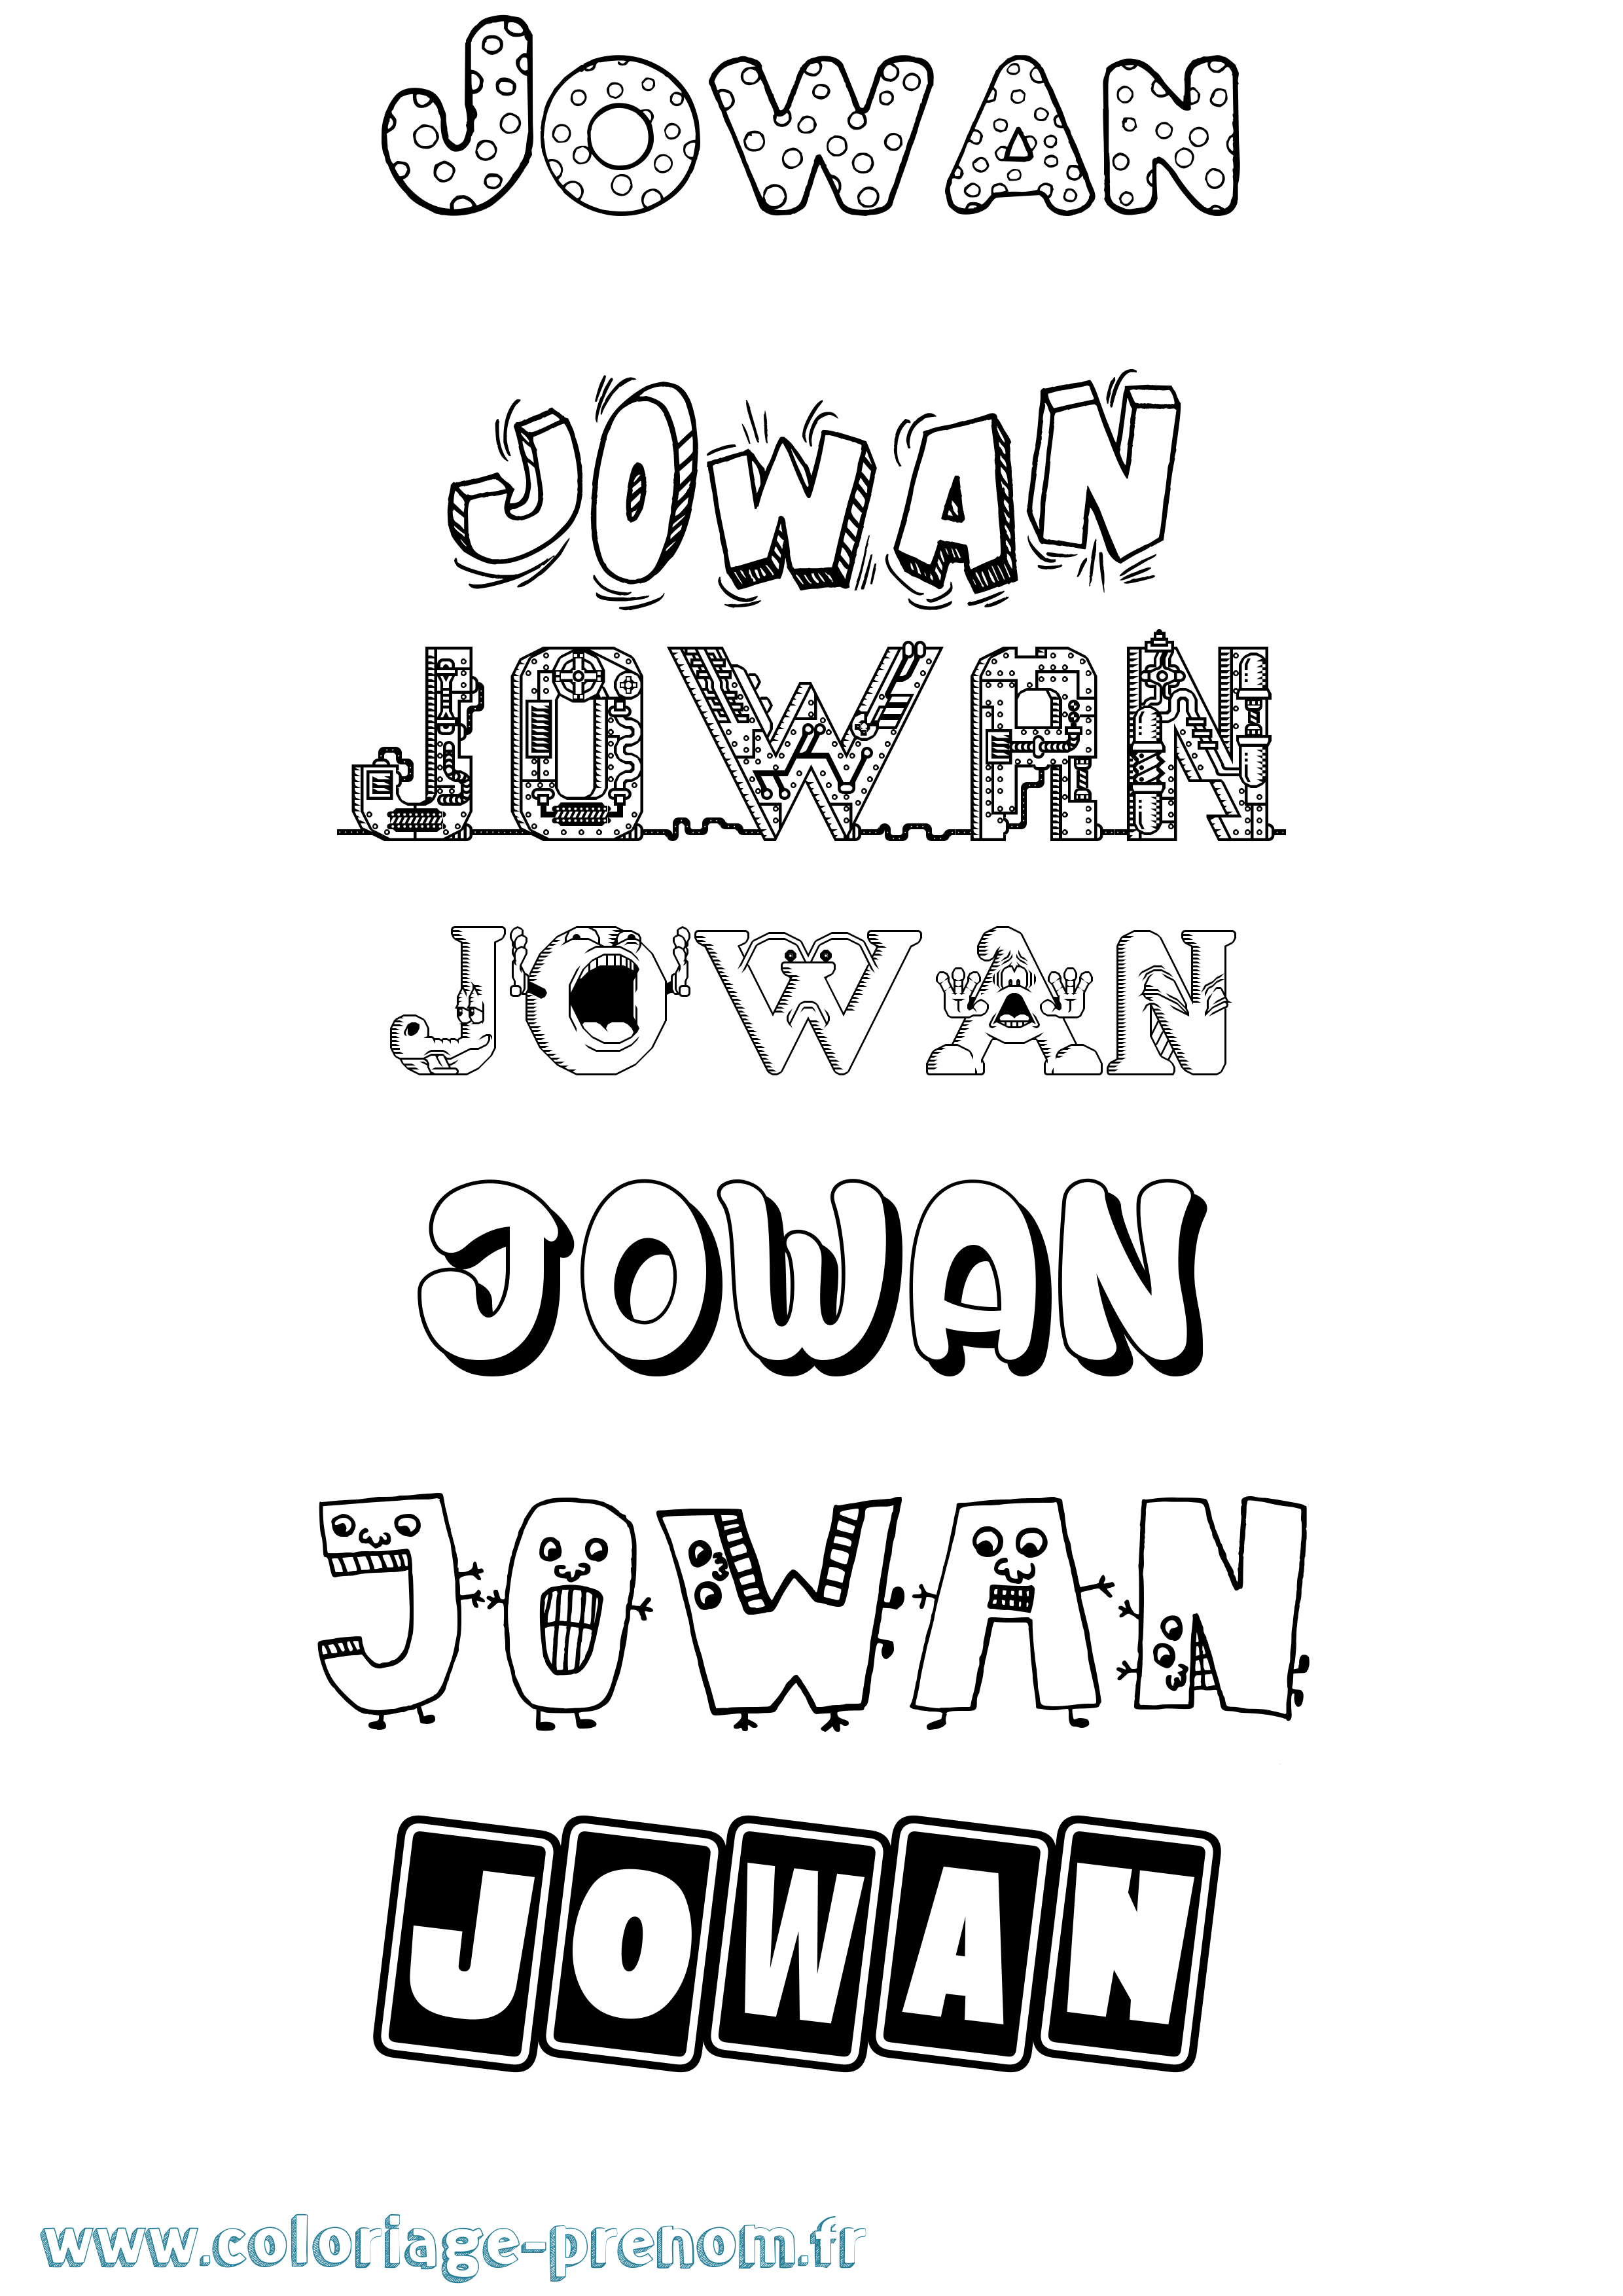 Coloriage prénom Jowan Fun